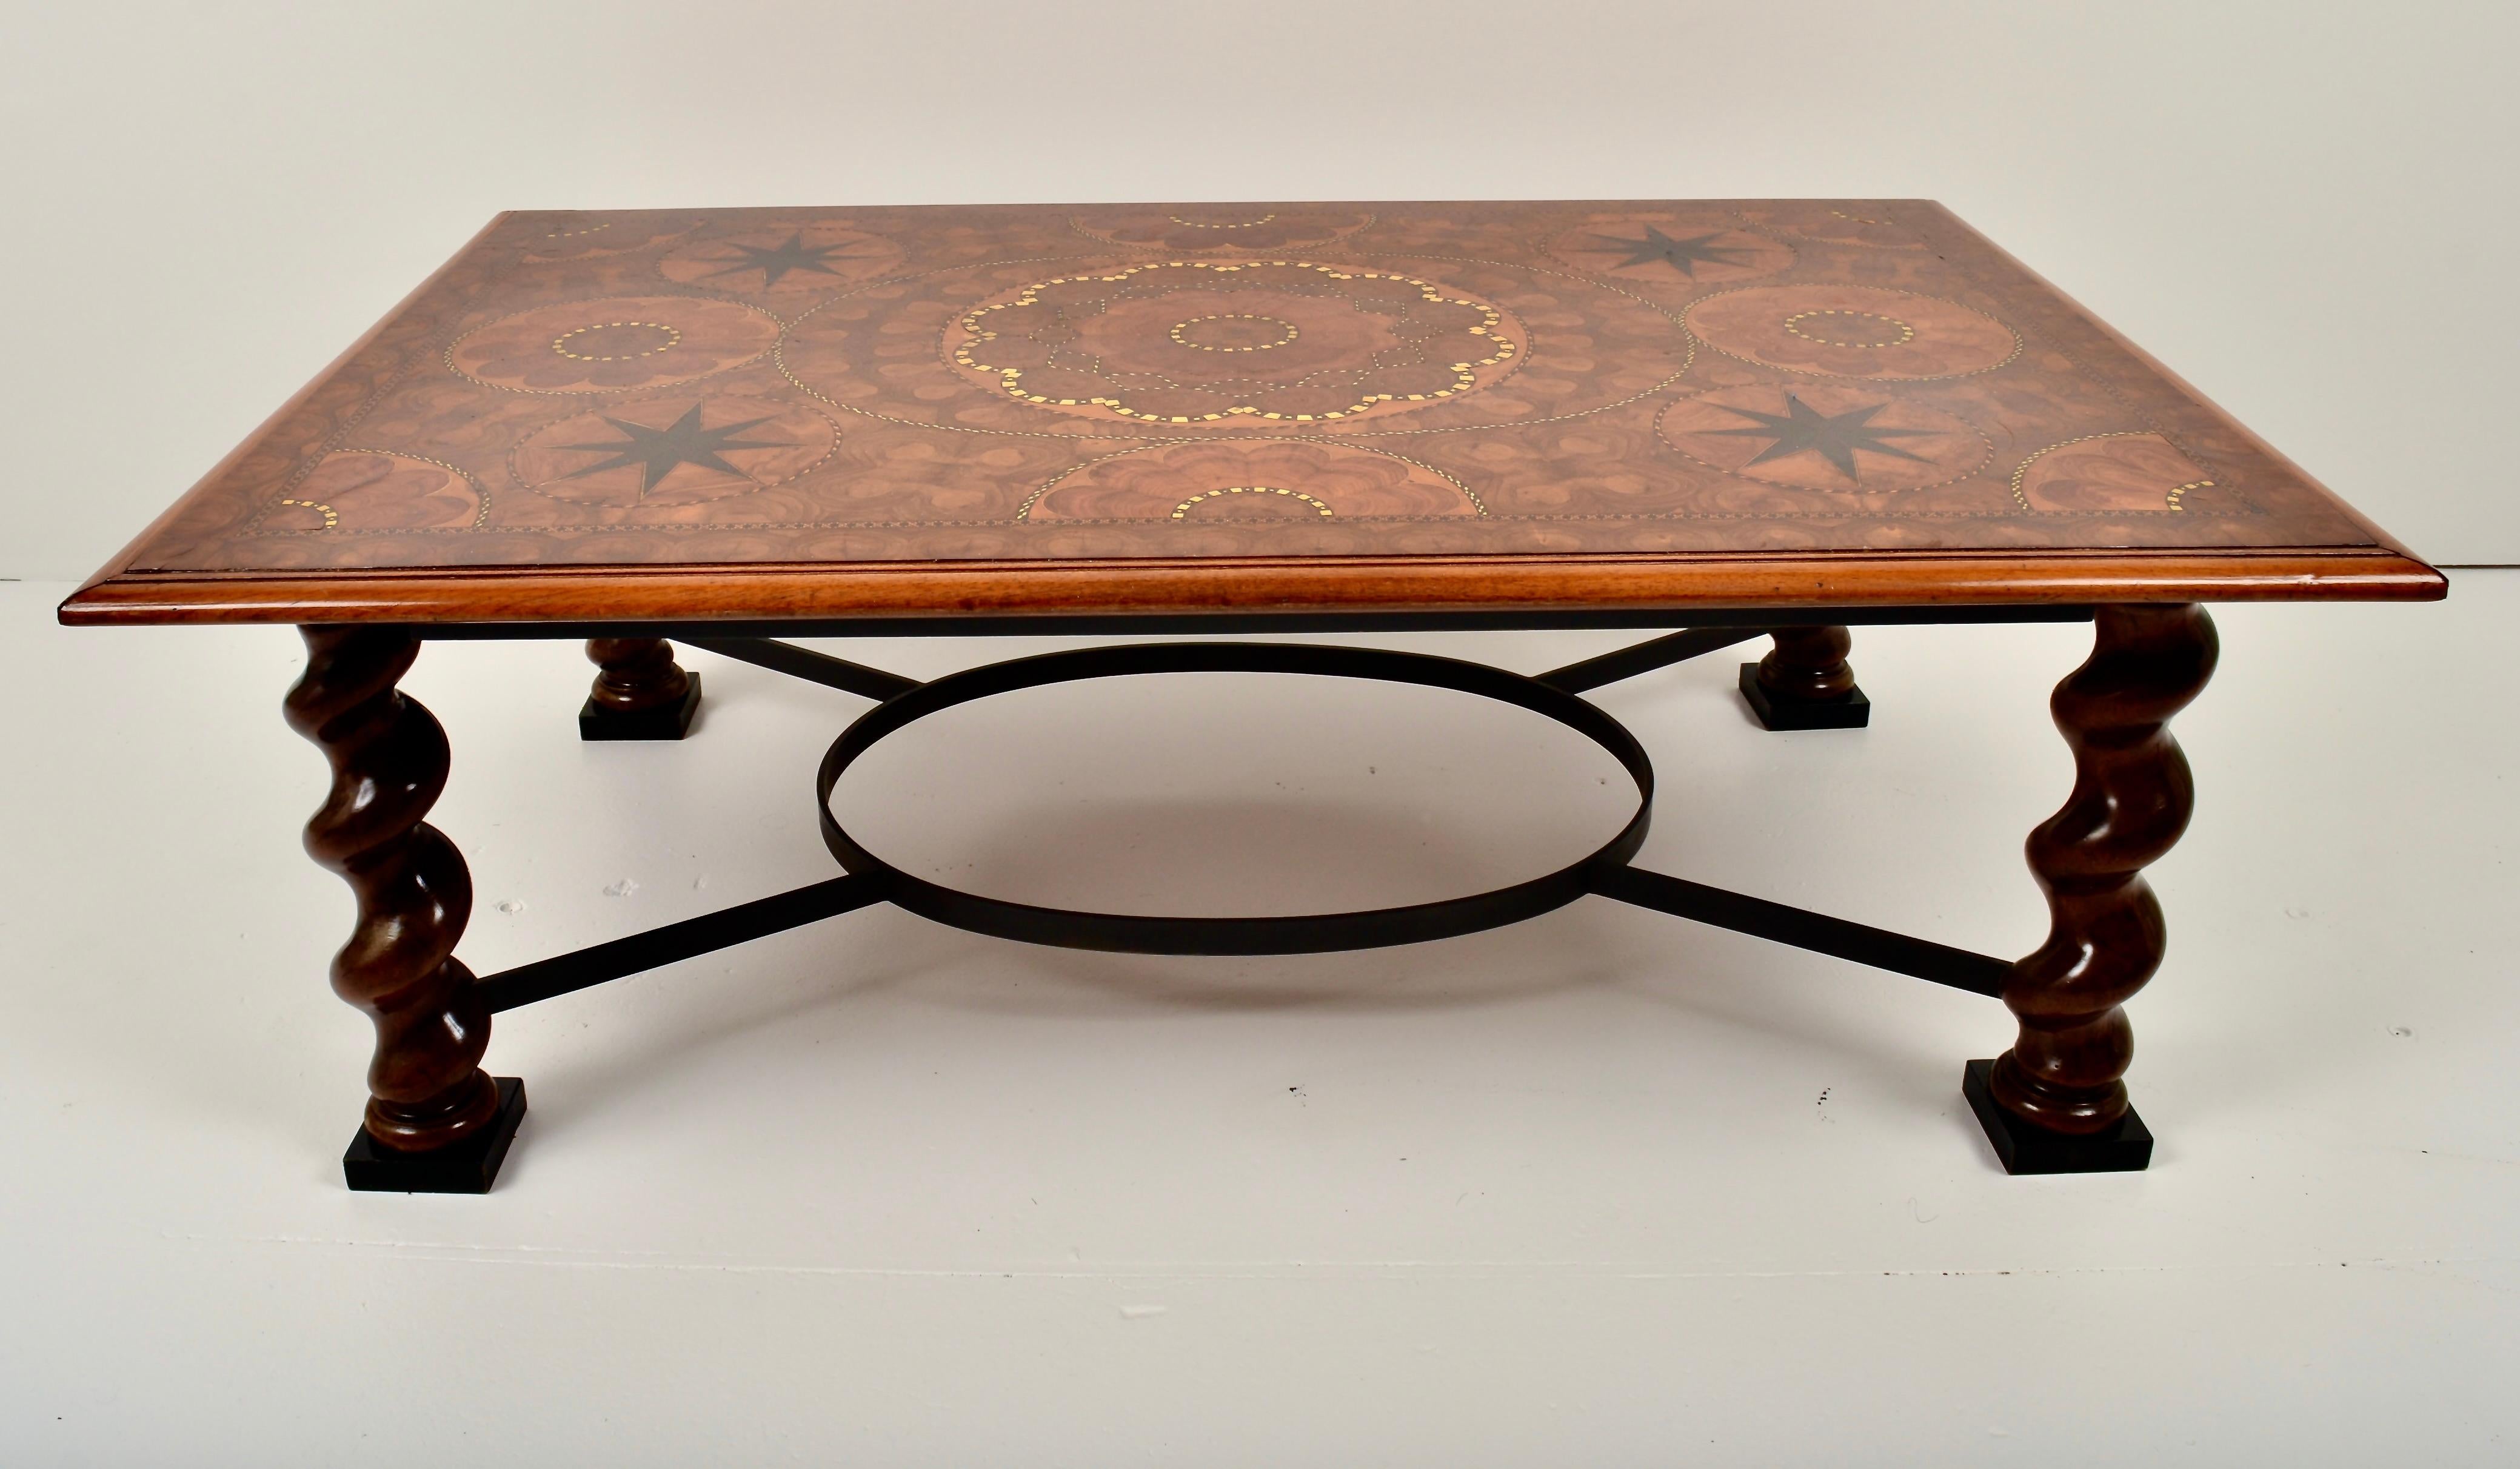 Dieser kontinentale Tisch ist ein herausragendes Beispiel für feine Handwerkskunst. Die Tischplatte ist mit exotischen Hölzern in einen Sockel aus Austernwurzelholz eingelegt. Eine Hochglanzoberfläche unterstreicht das Design. Die schweren